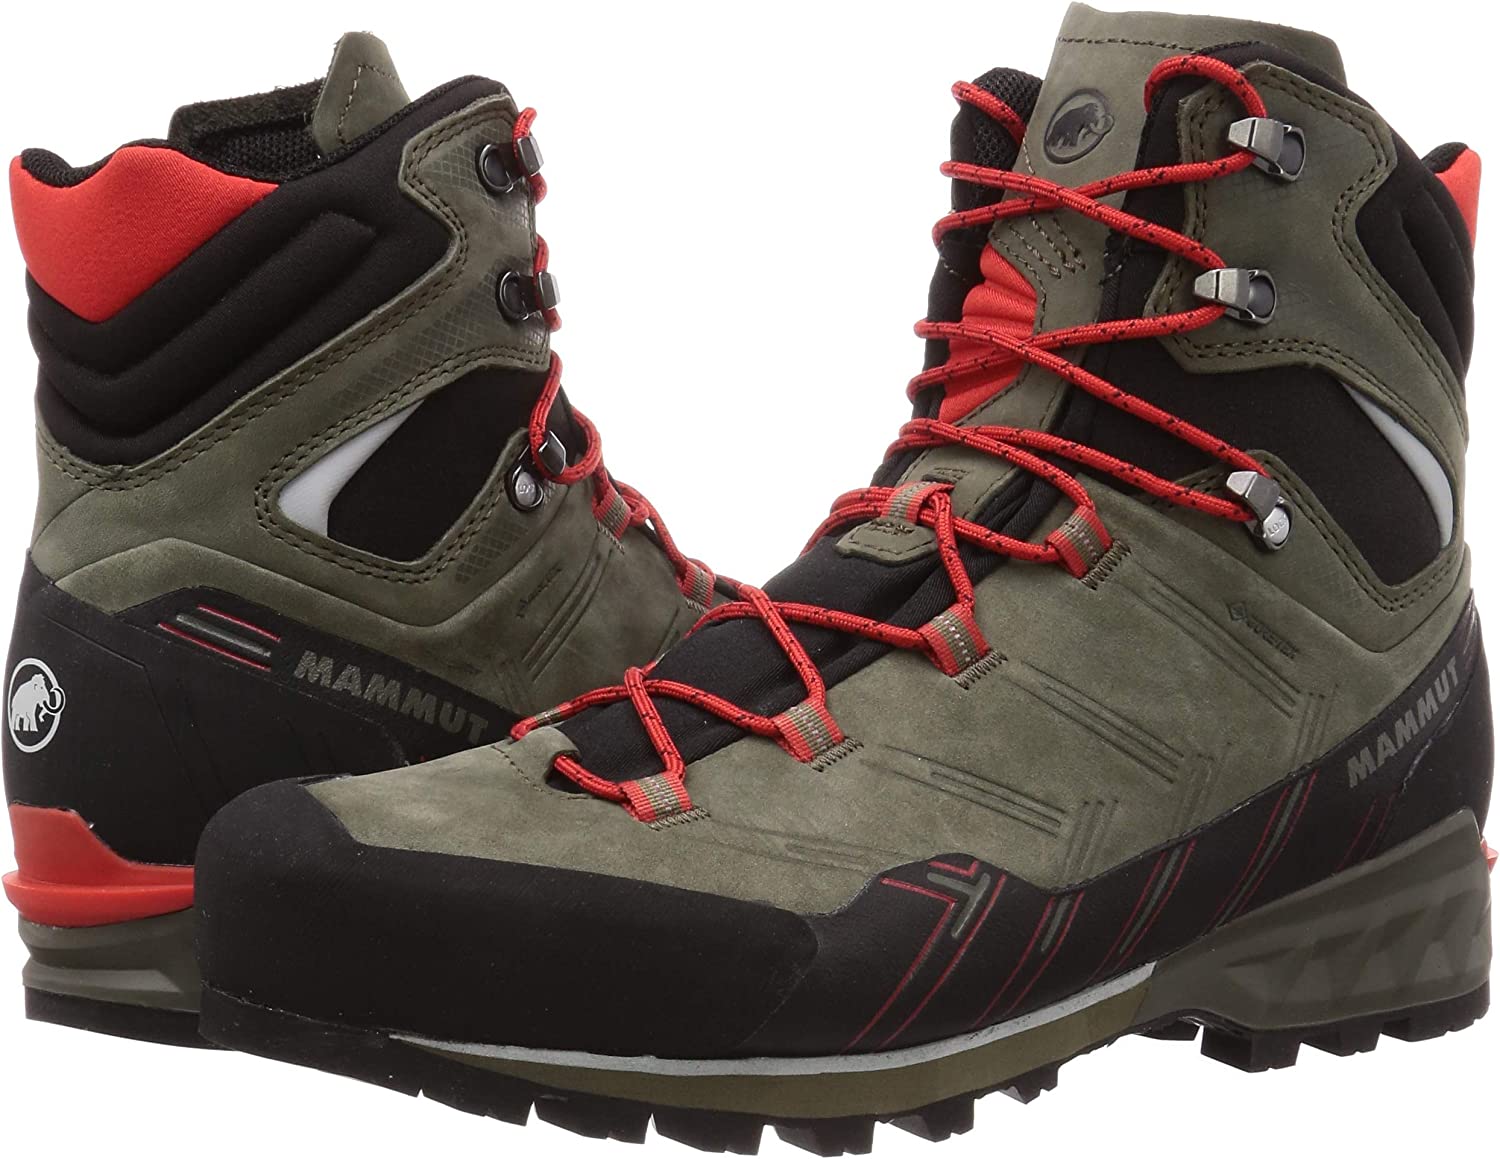 Mammut Kento Advanced High GTX Men's Hiking Boots